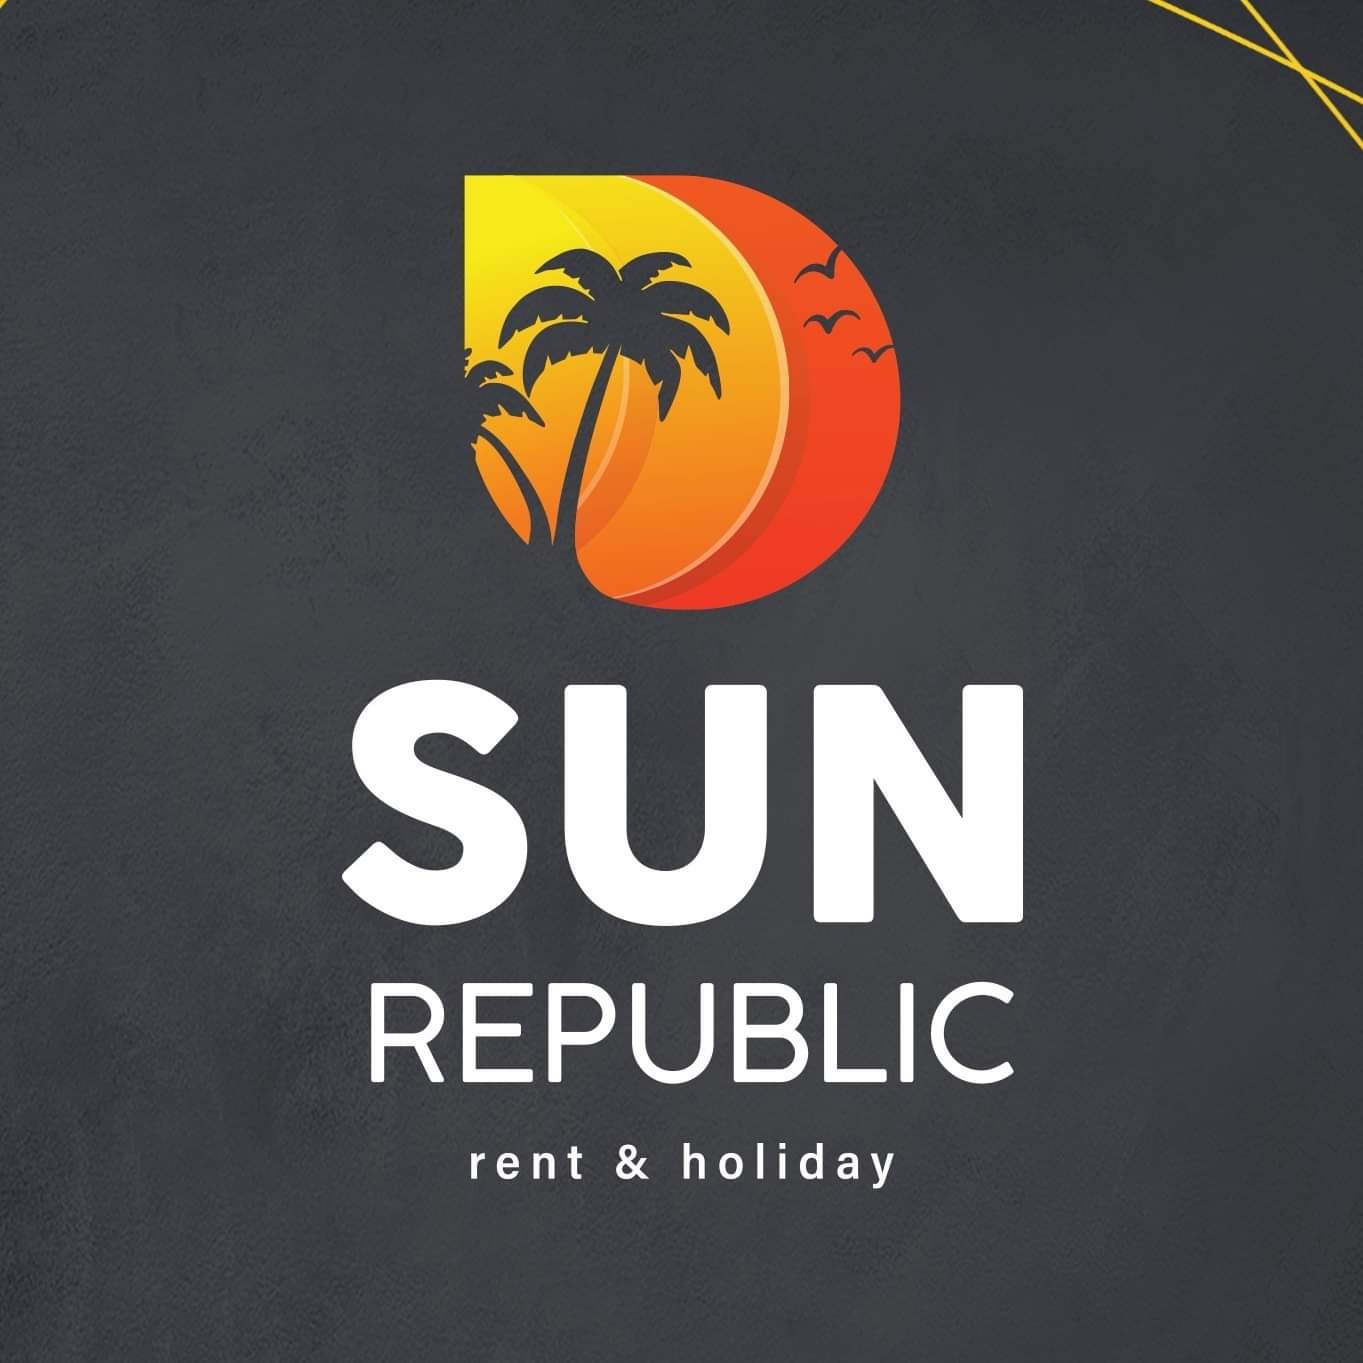 Sun Republic